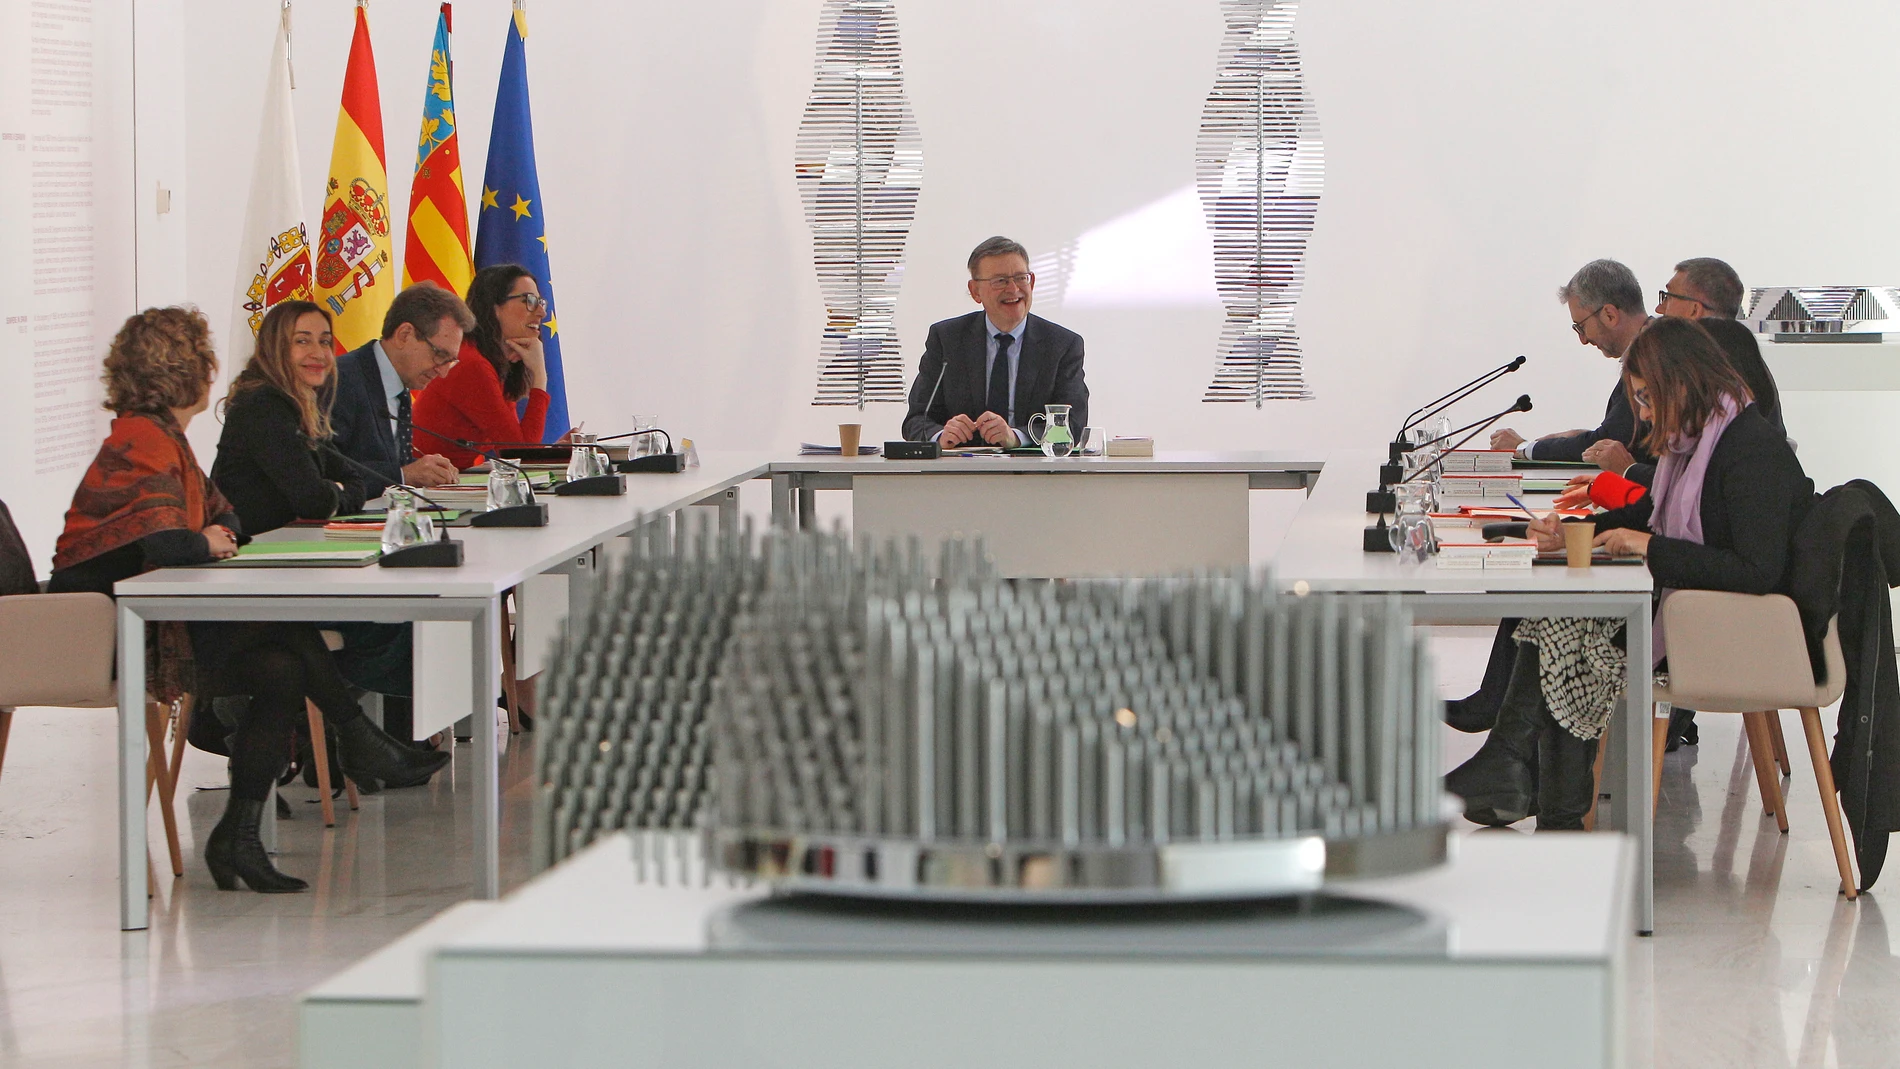 El presidente de la Generalitat valenciana, Ximo Puig, y su Gobierno reunidos en el MACA (Museo de Arte Contemporáneo de Alicante) donde se ha celebrado la reunión del Consell